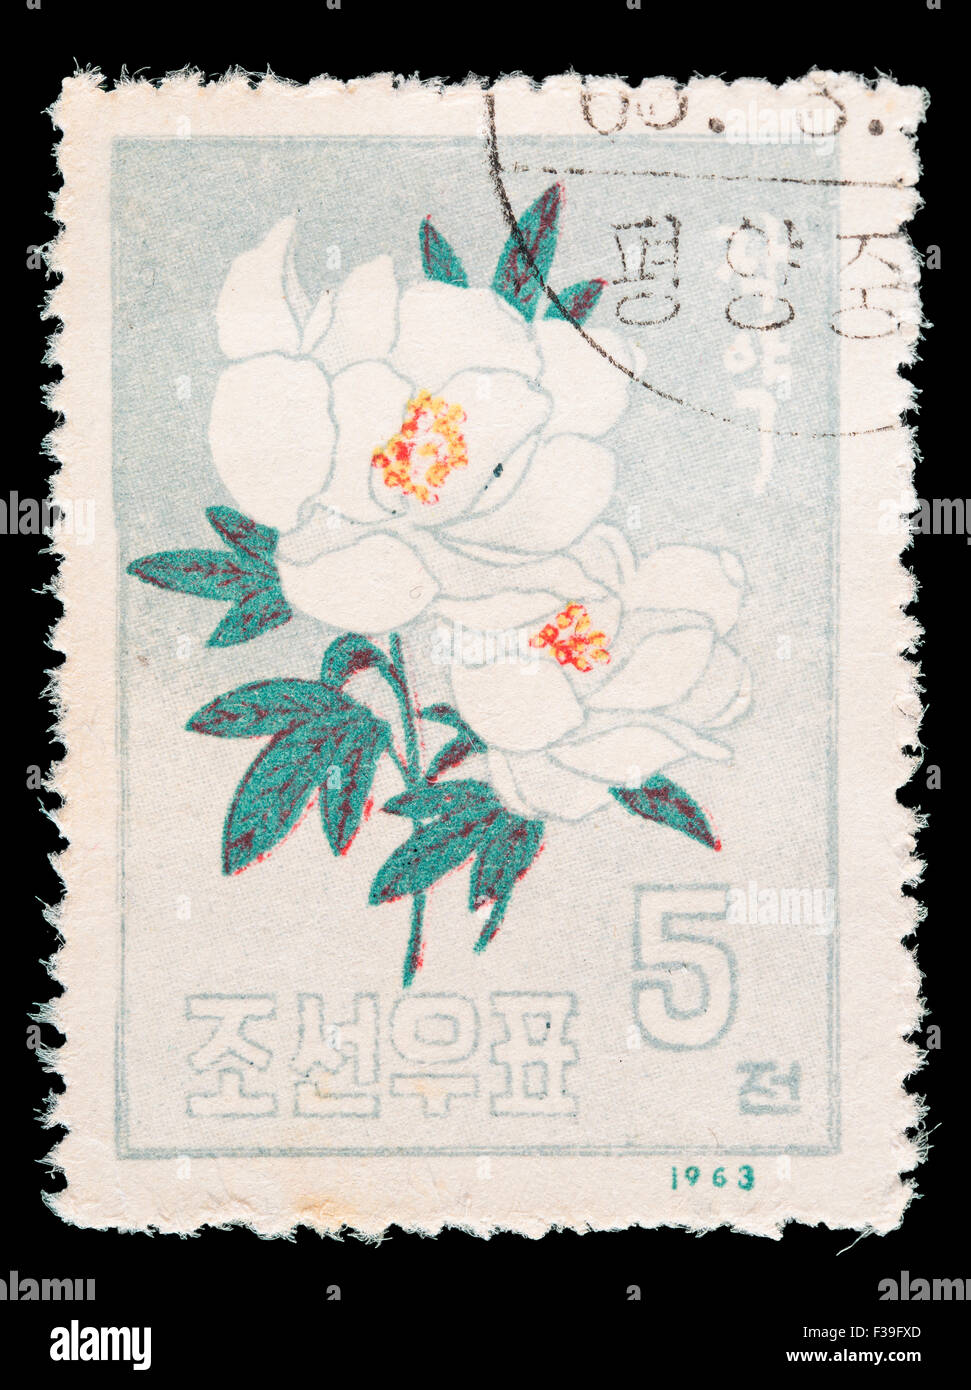 Nordkorea - ca. 1963: Eine Briefmarke gedruckt in Nordkorea zeigt eine japanische Rose, Rosa Rugosa, ca. 1963 Stockfoto